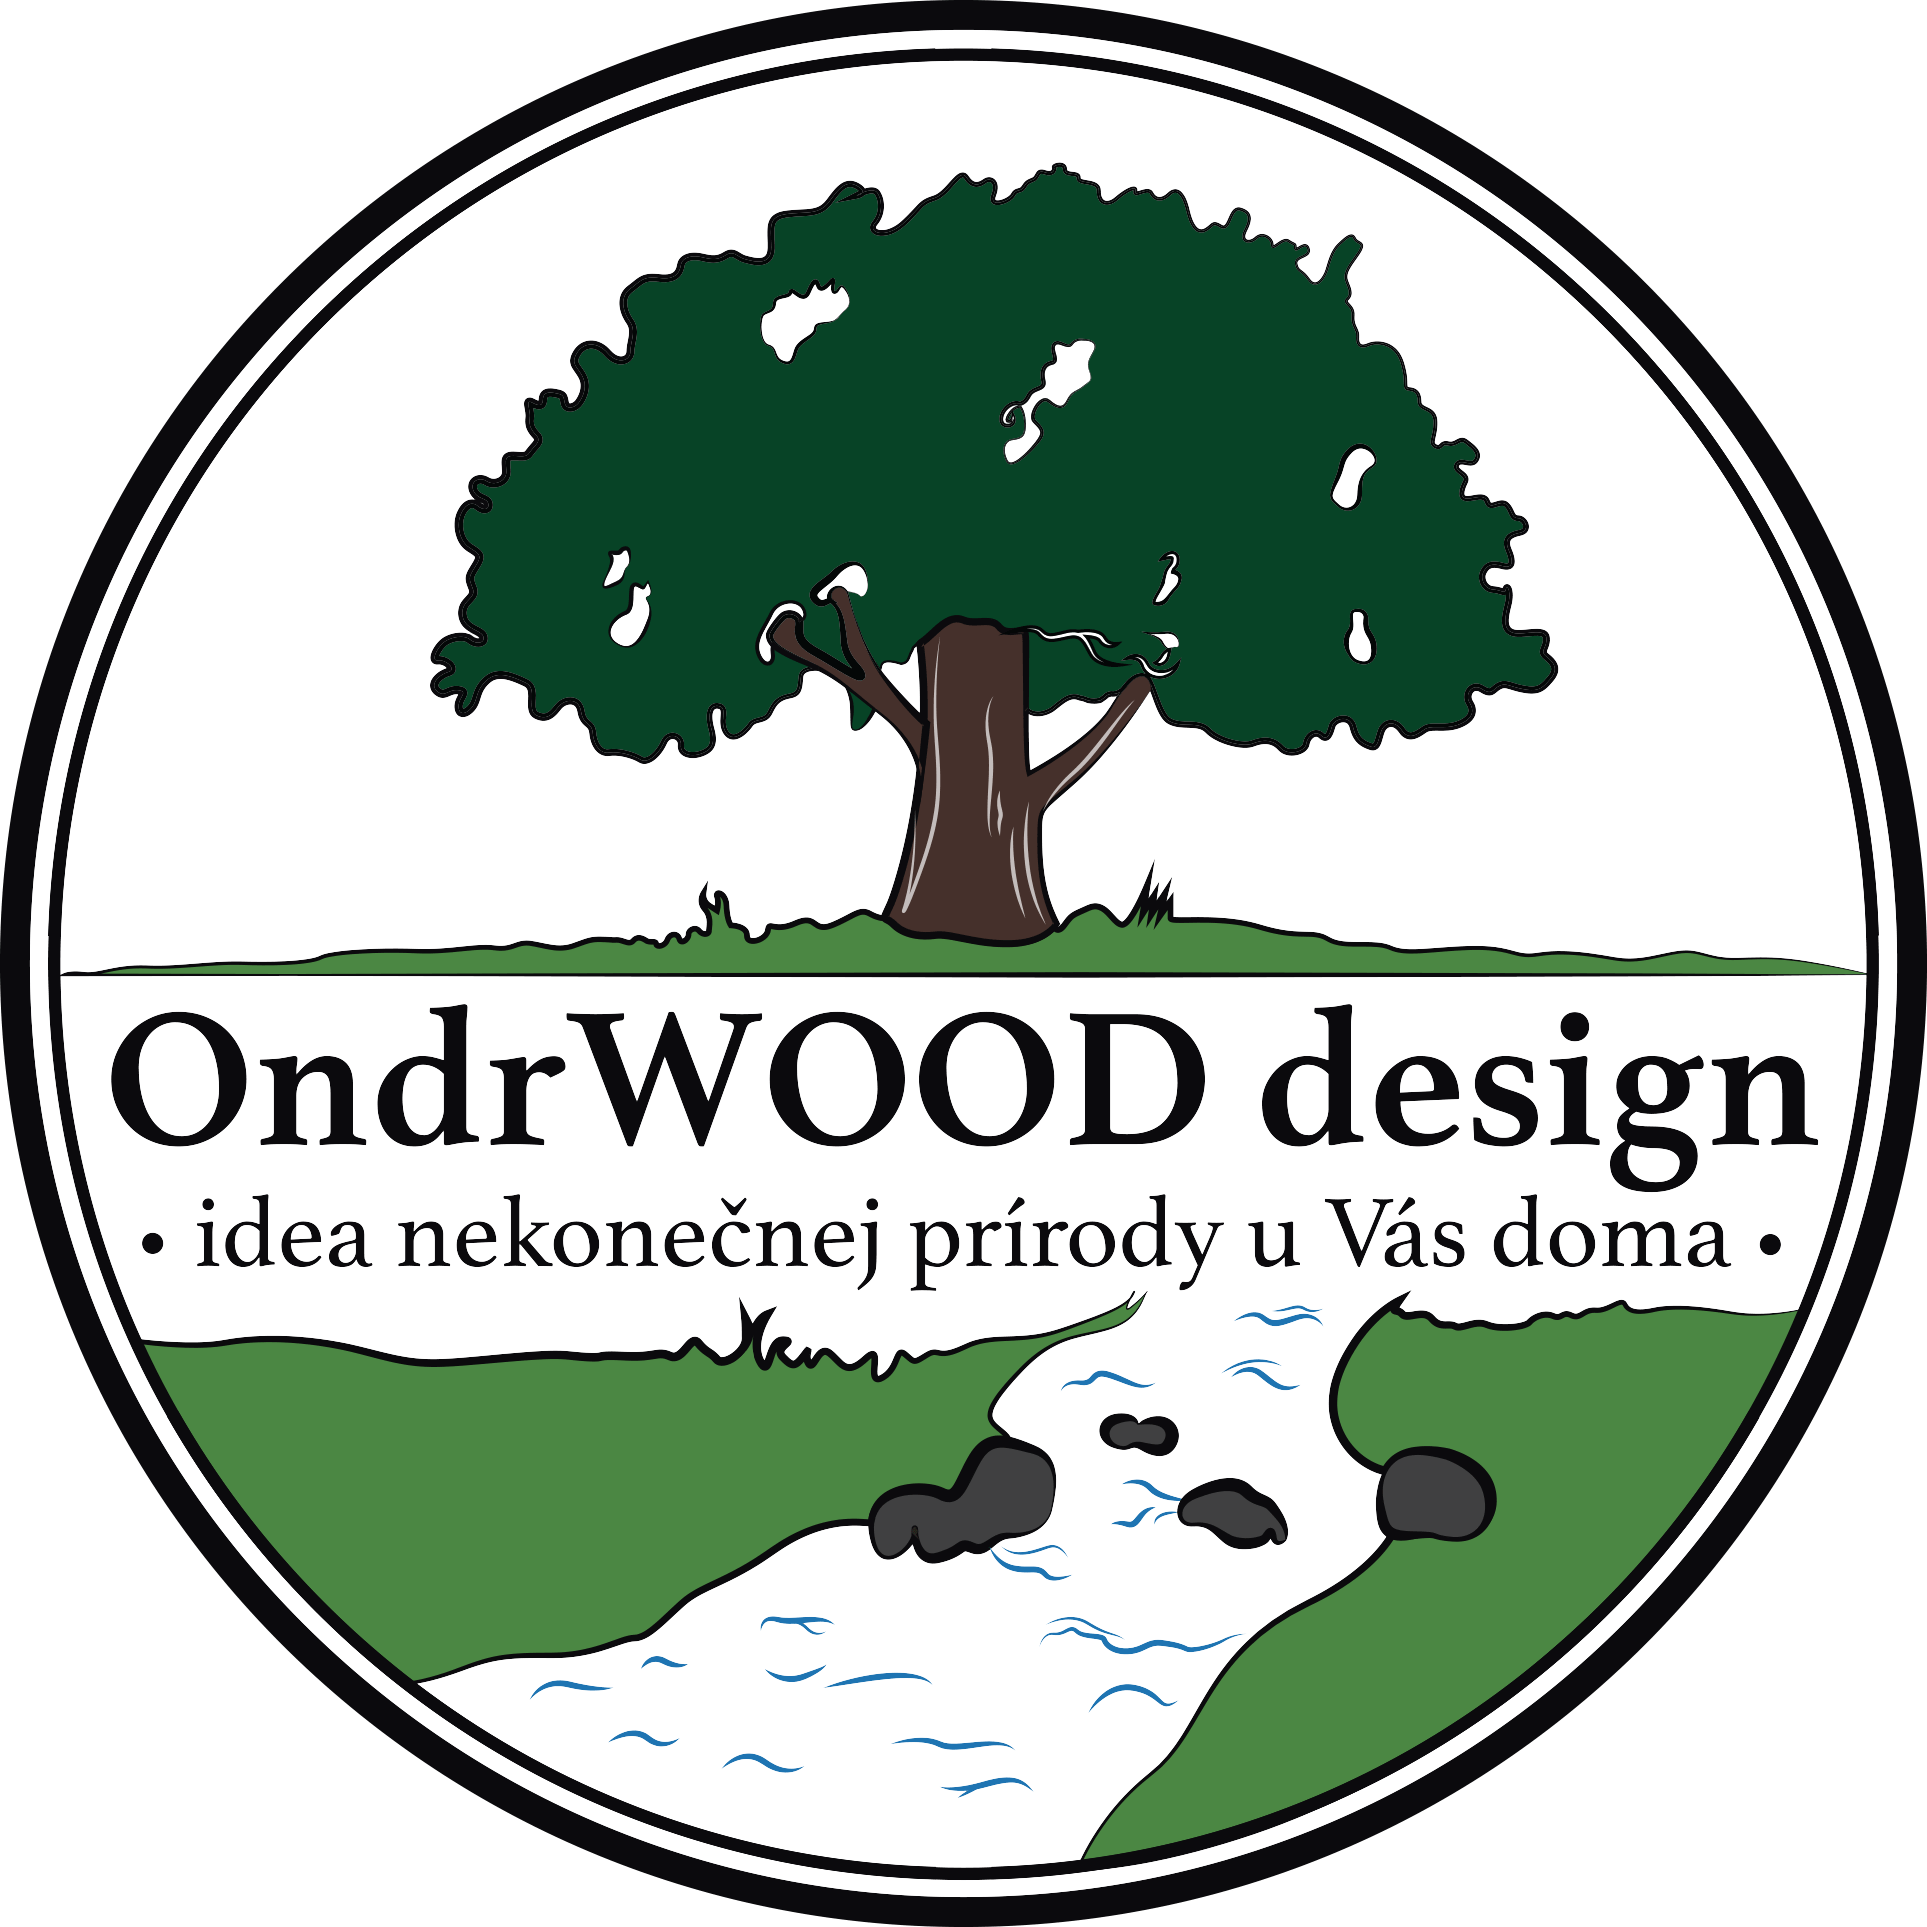 OndrWOOD design